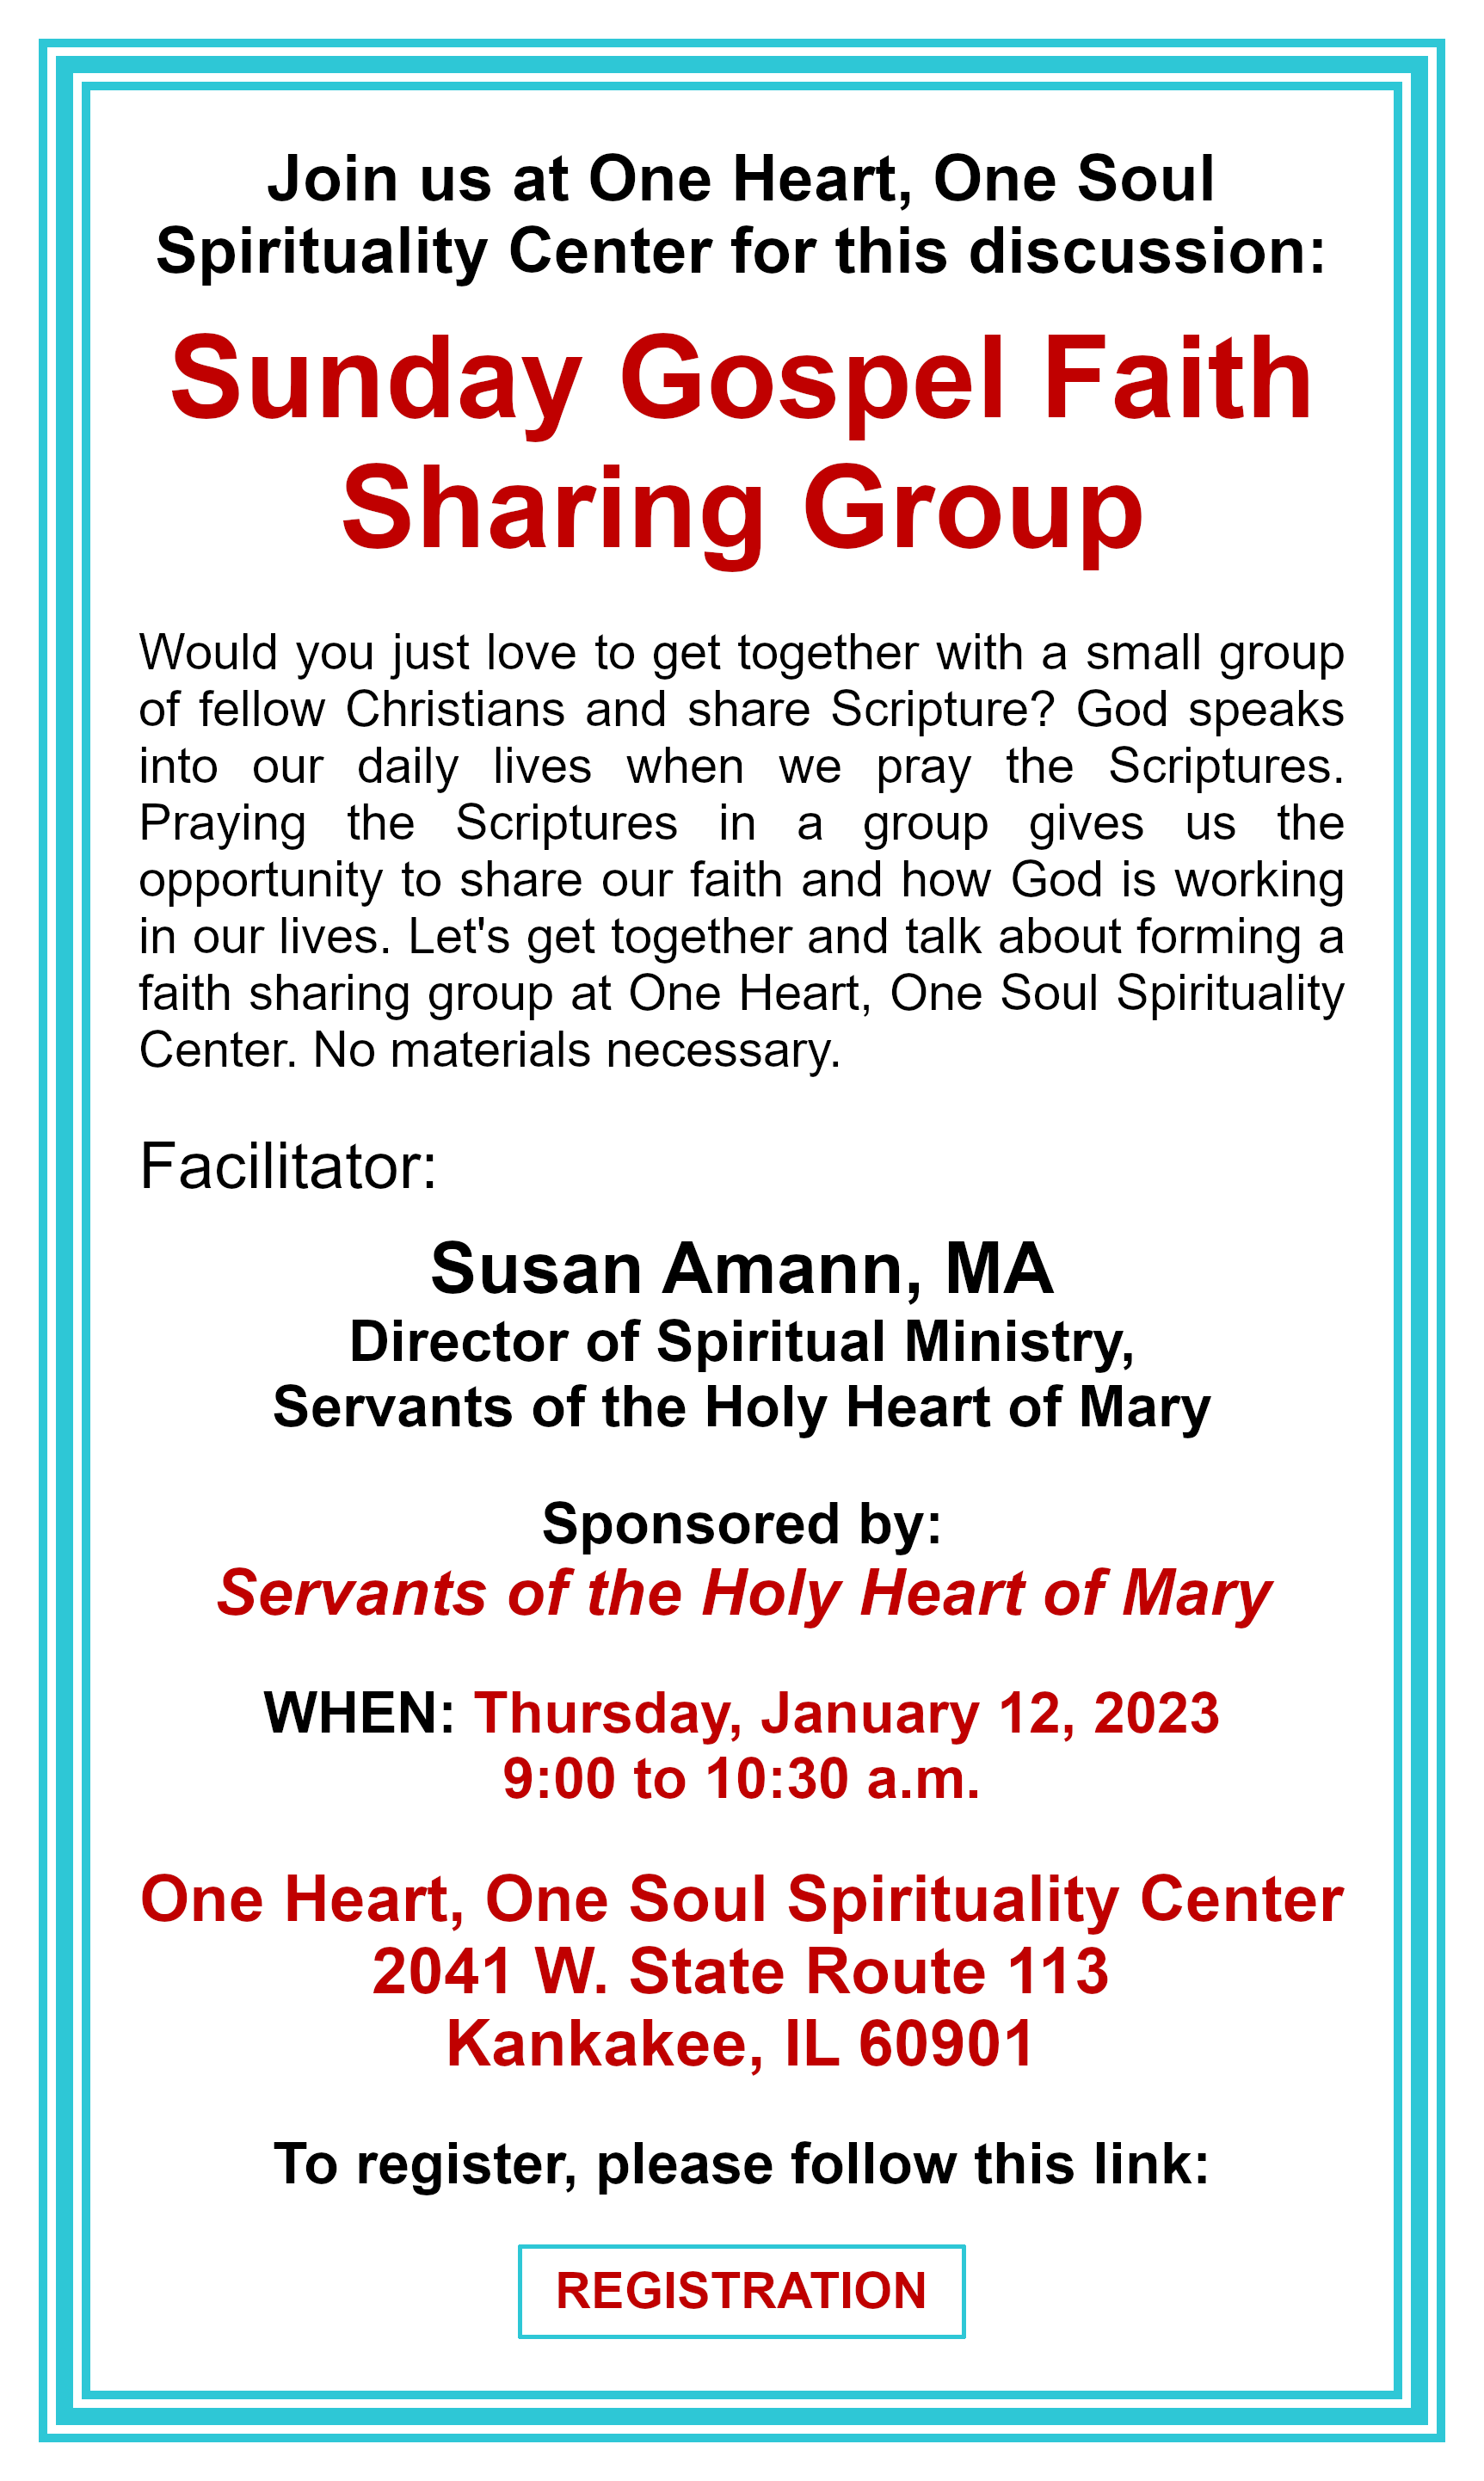 Sunday Gospel Faith Sharing Group